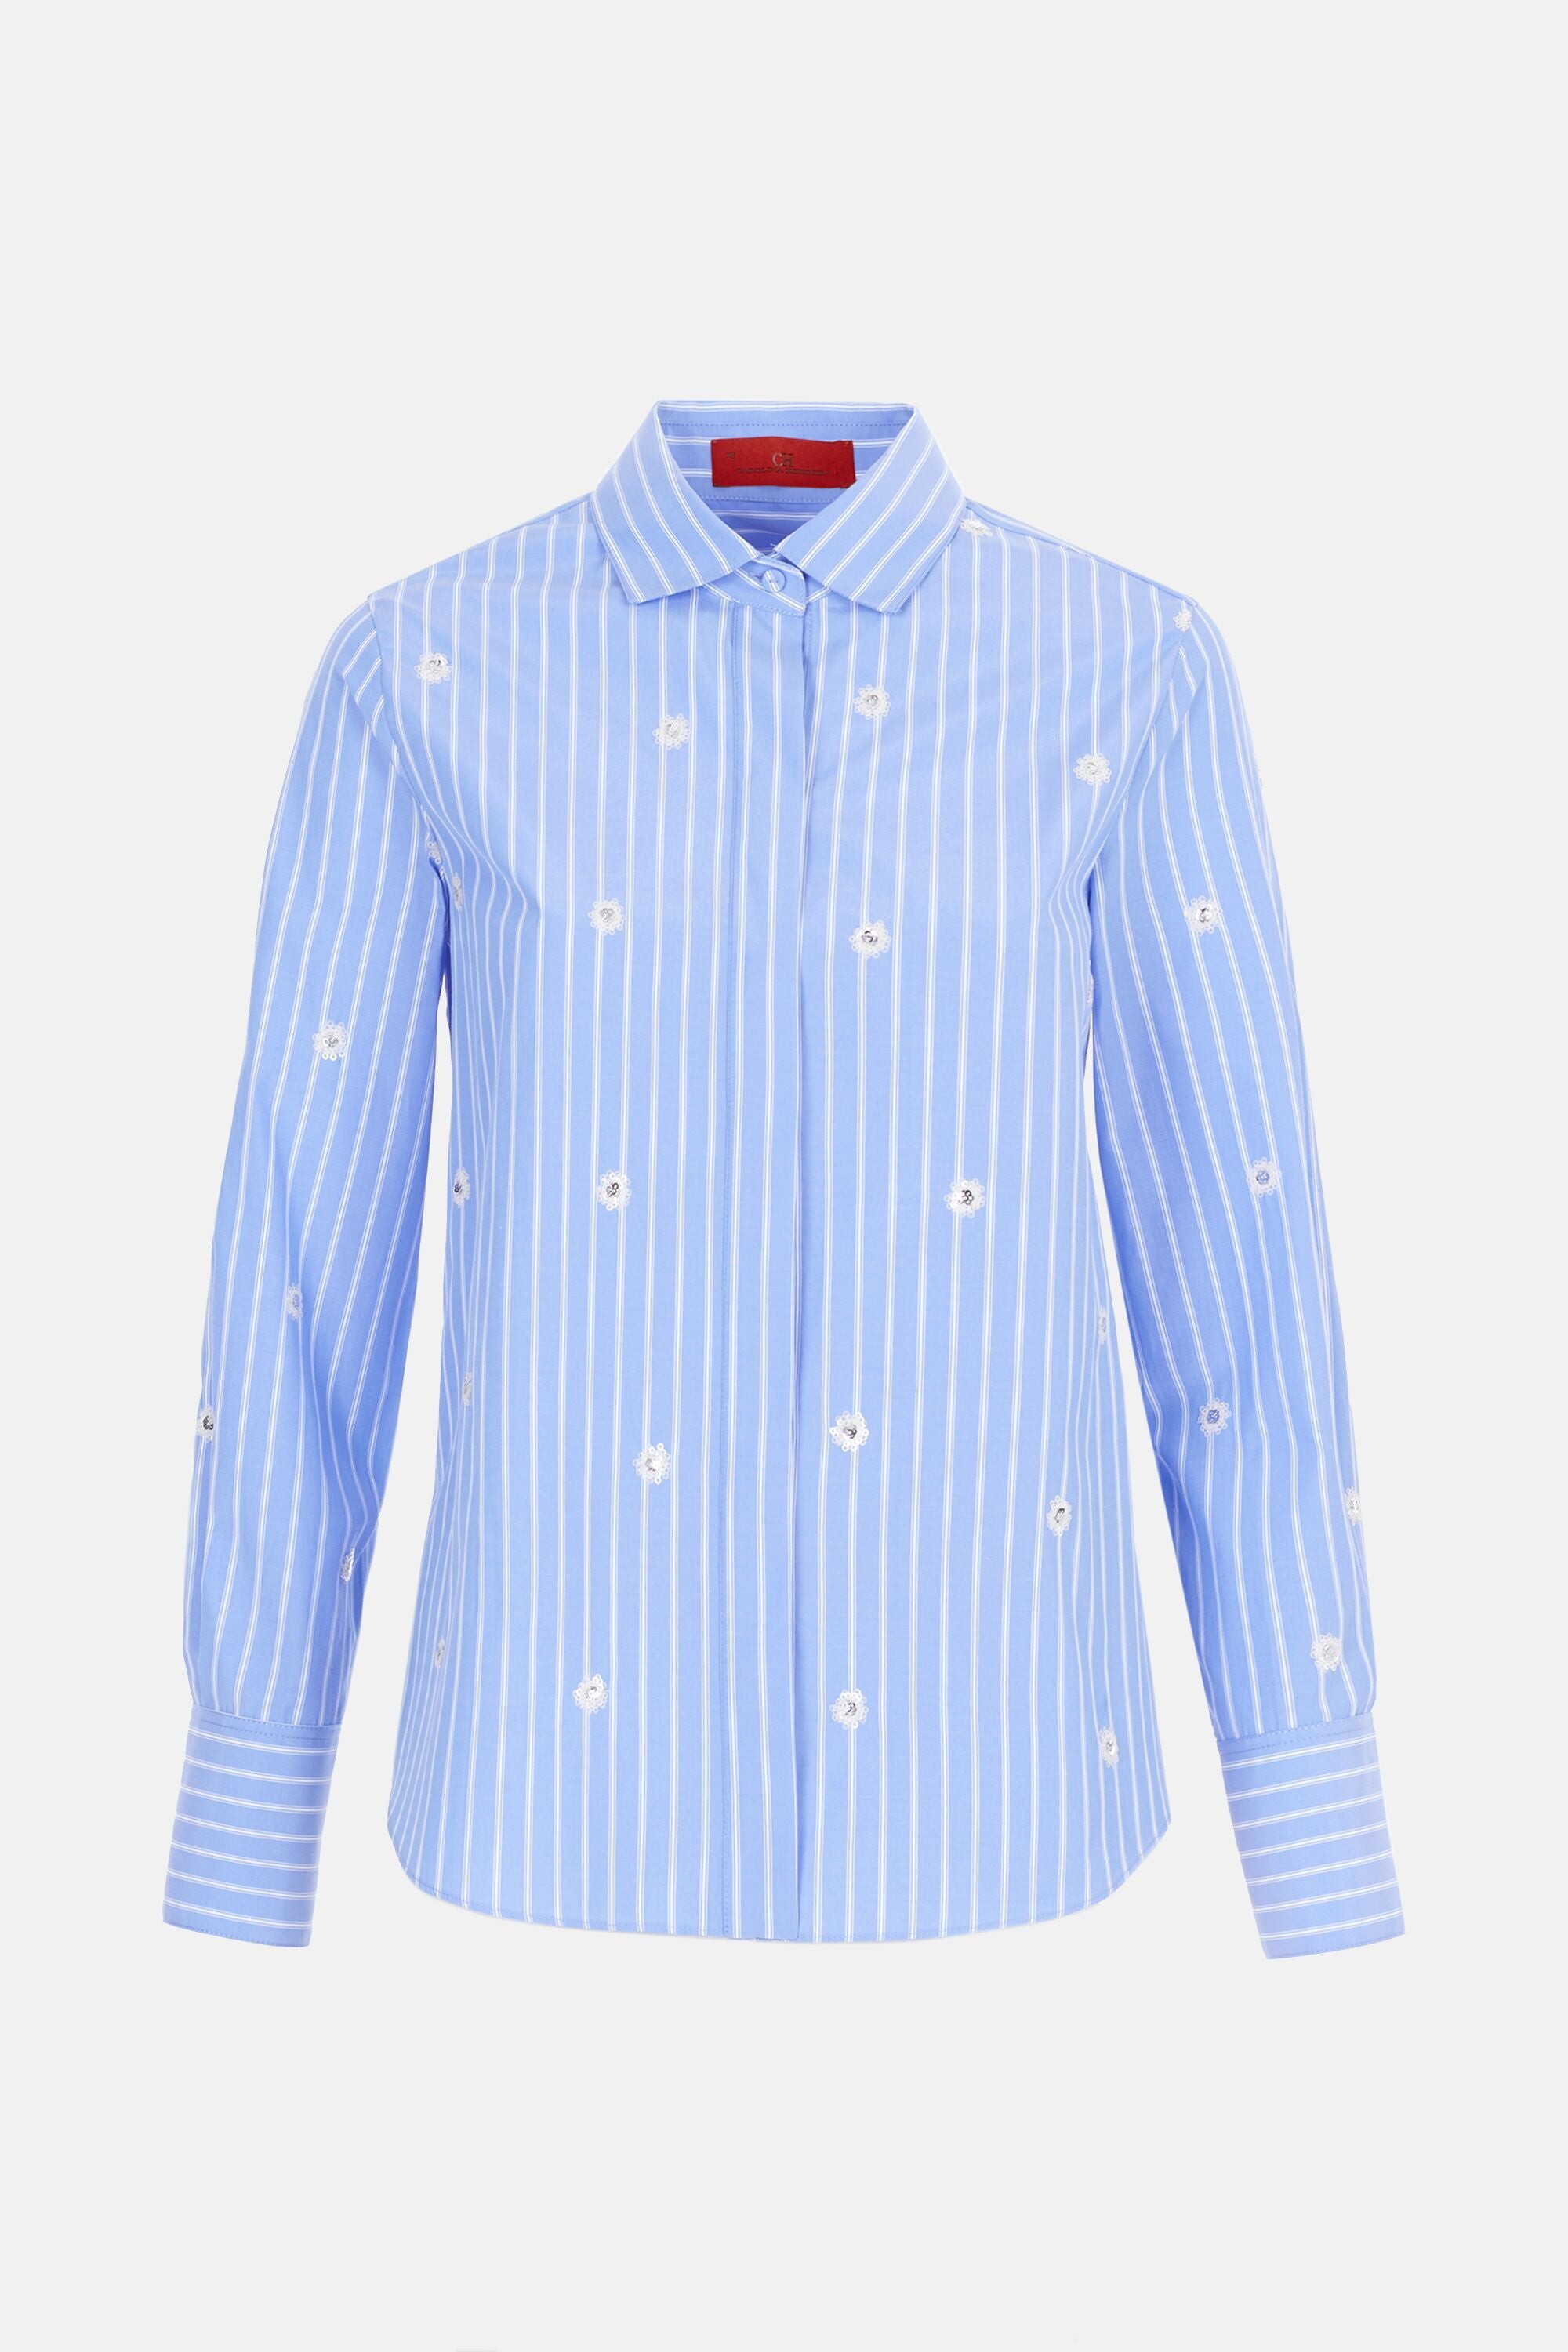 Sequin Stripe Sweatshirt, White - New Arrivals - The Blue Door